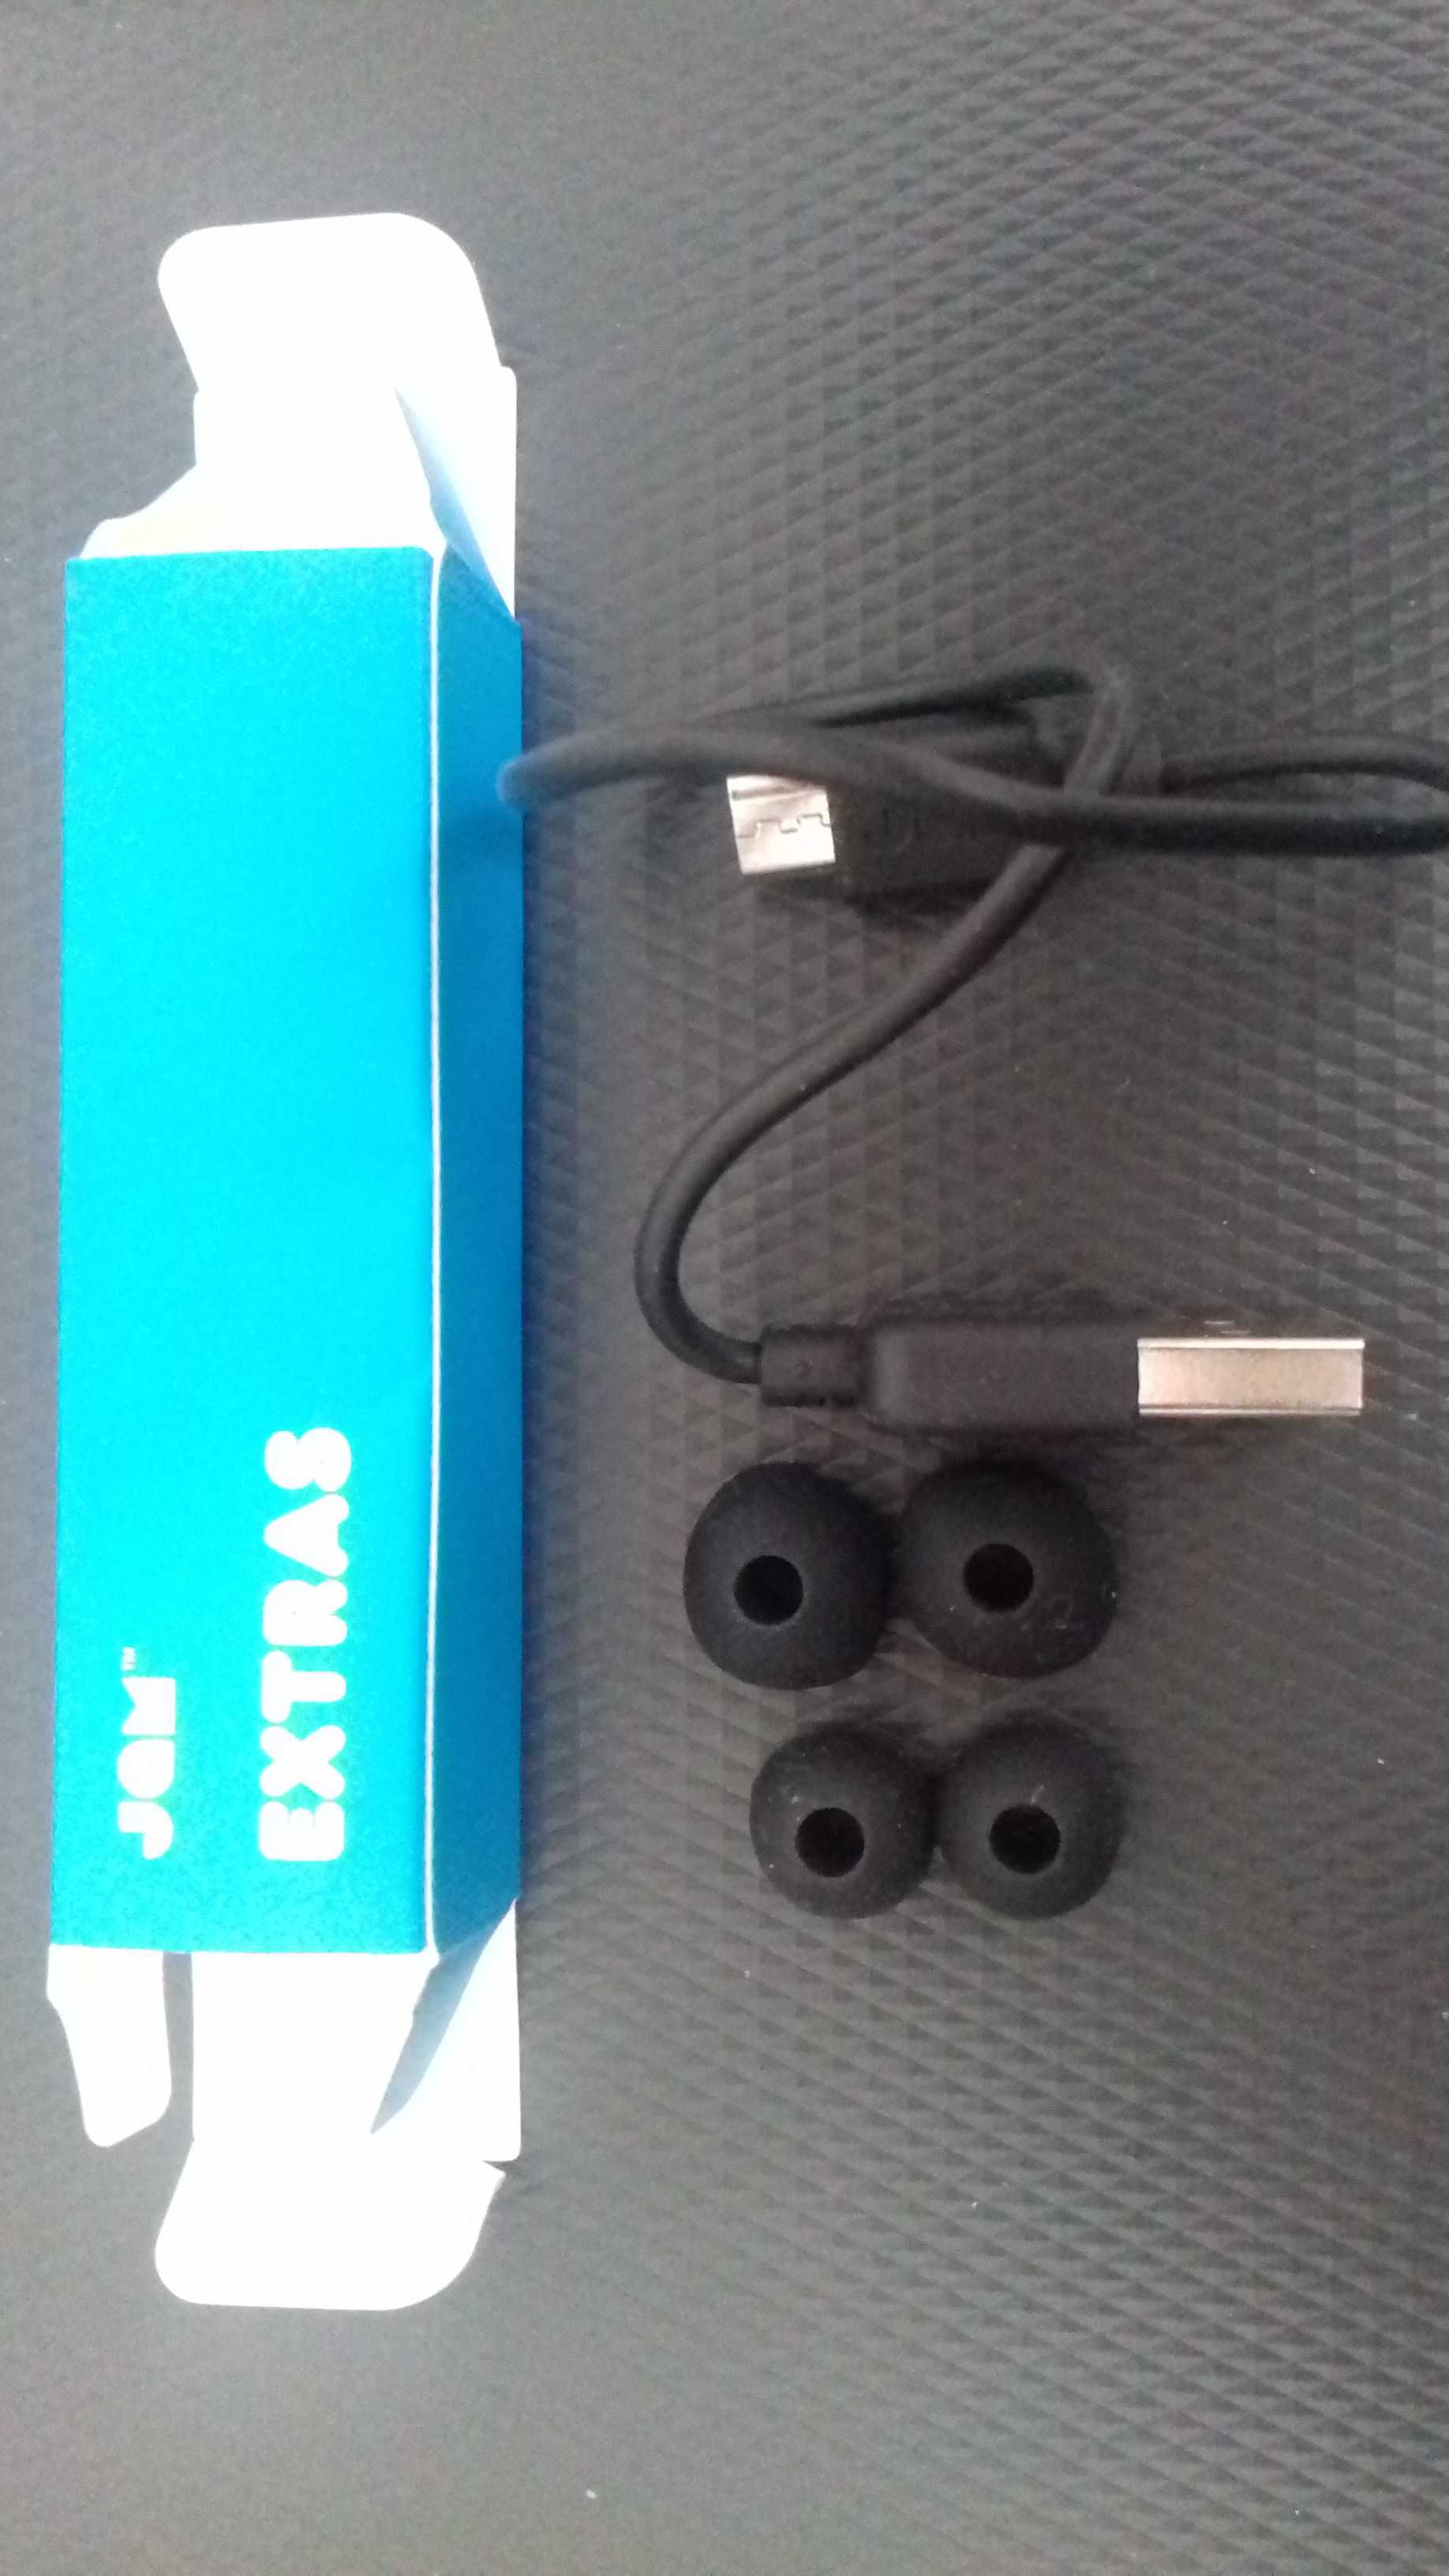 NOWE Słuchawki bezprzewodowe (bluetooth) z mikrofonem, douszne, czarne